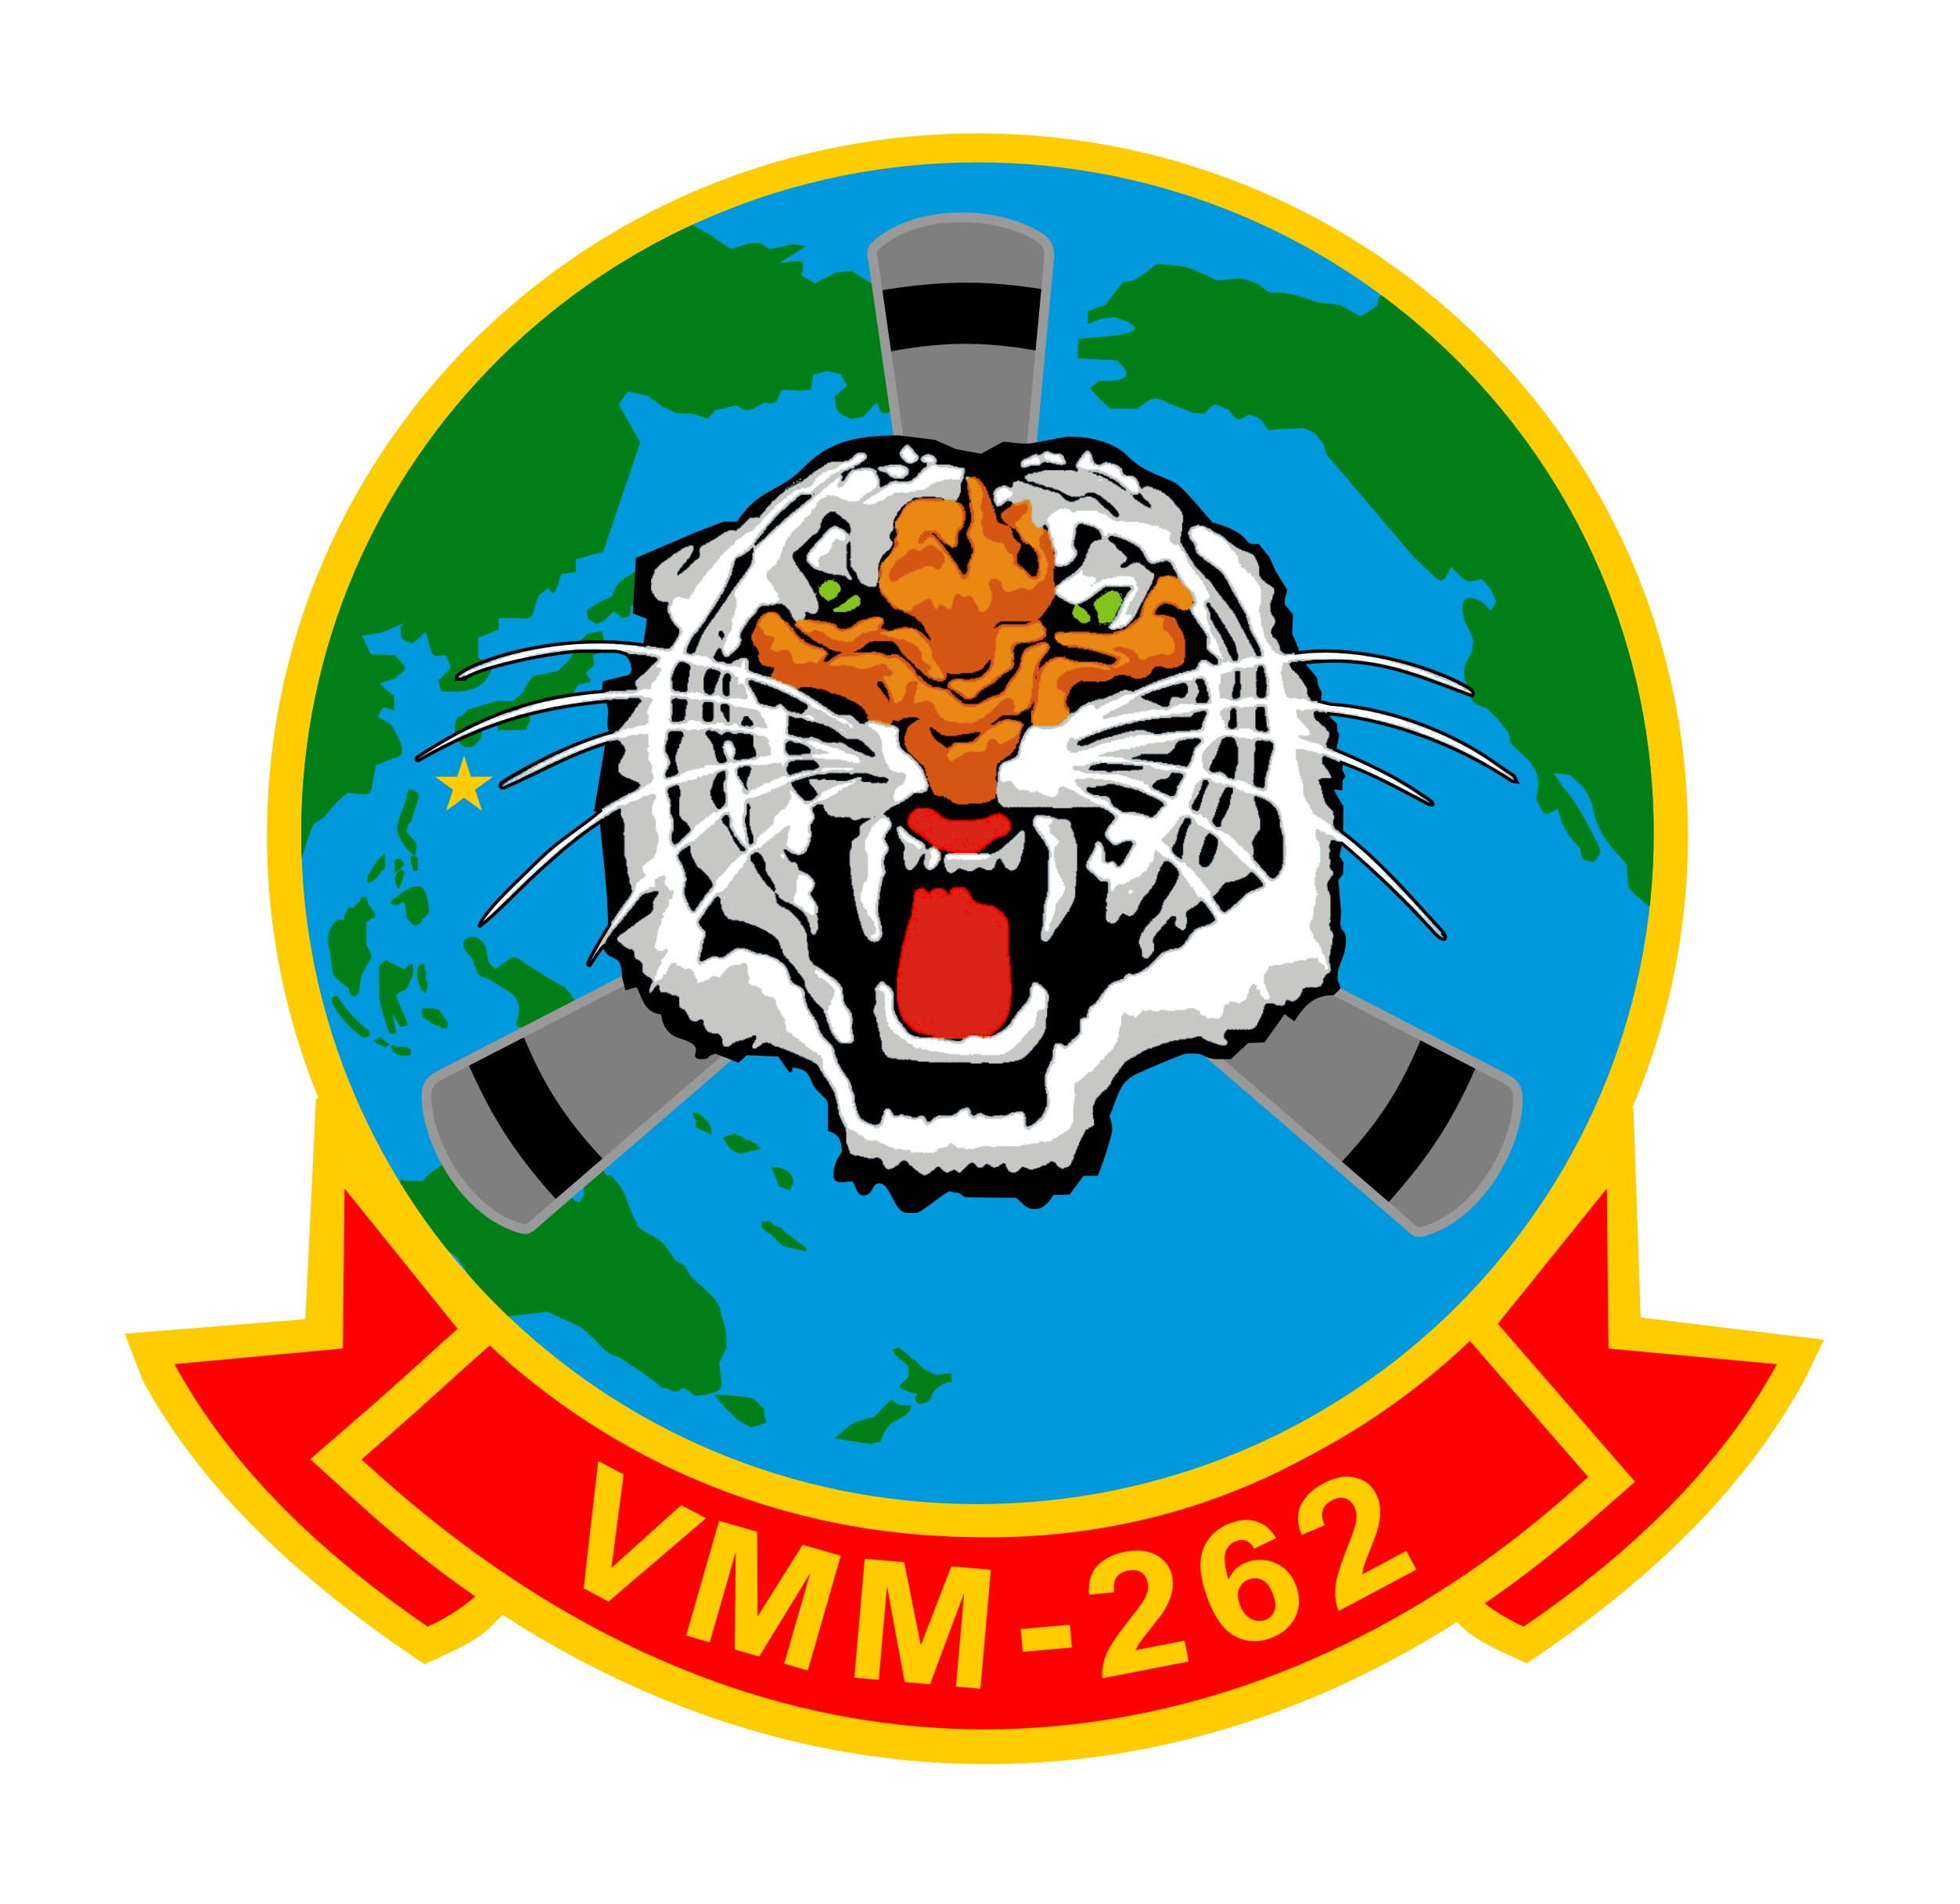 VMM-262 Logo